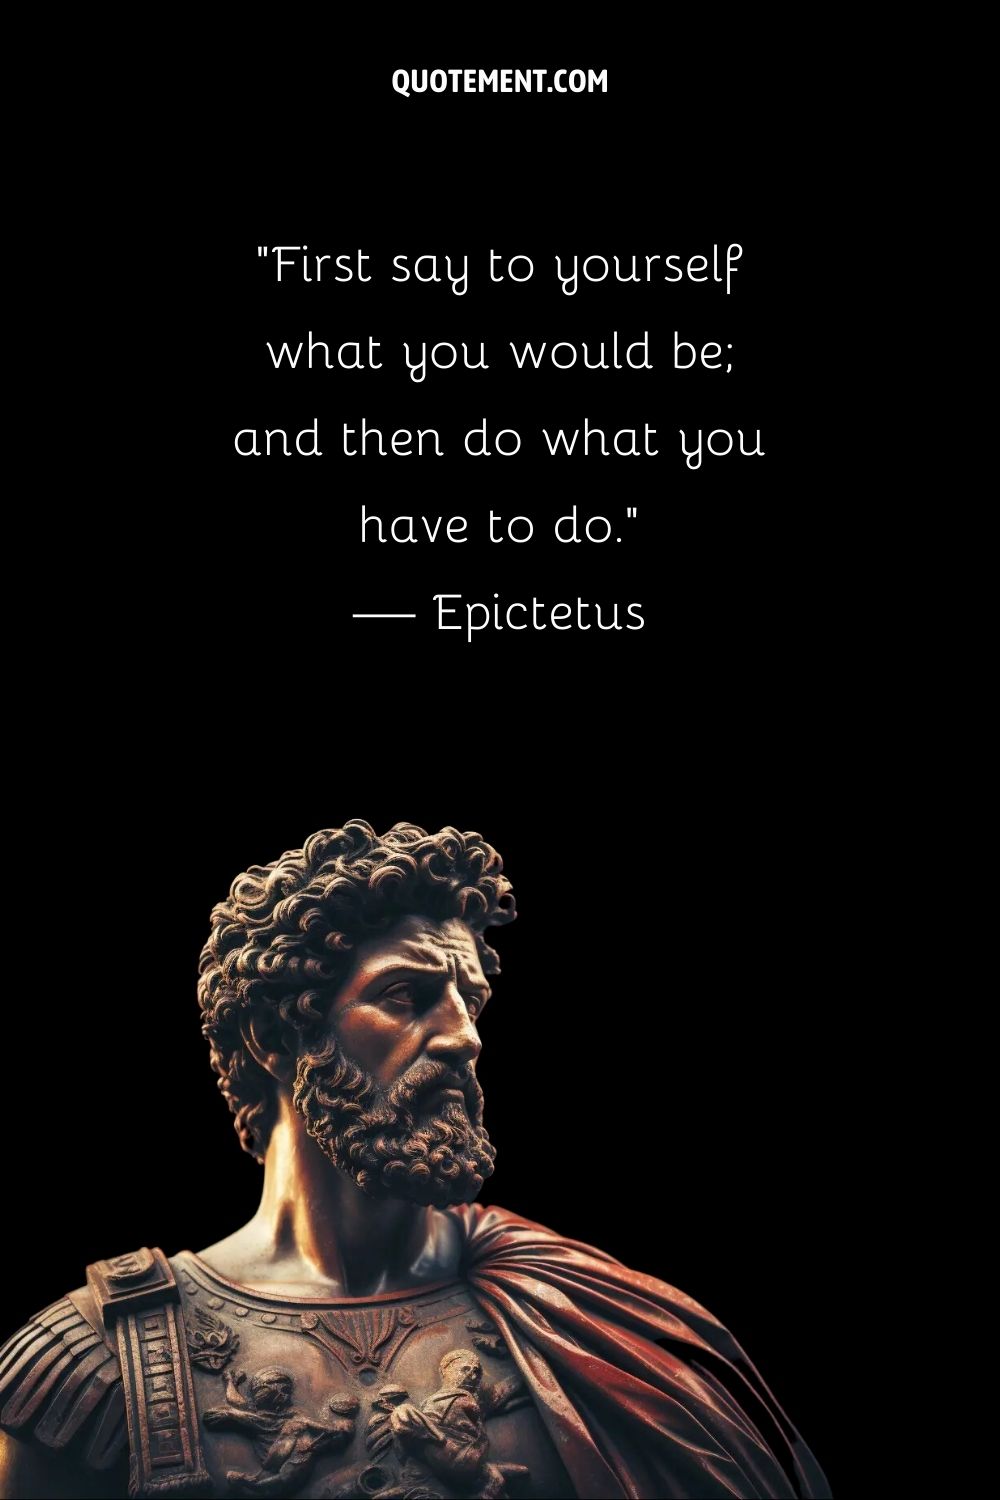 La sabiduría de Epicteto armonizada en mármol esculpido y perdurable.